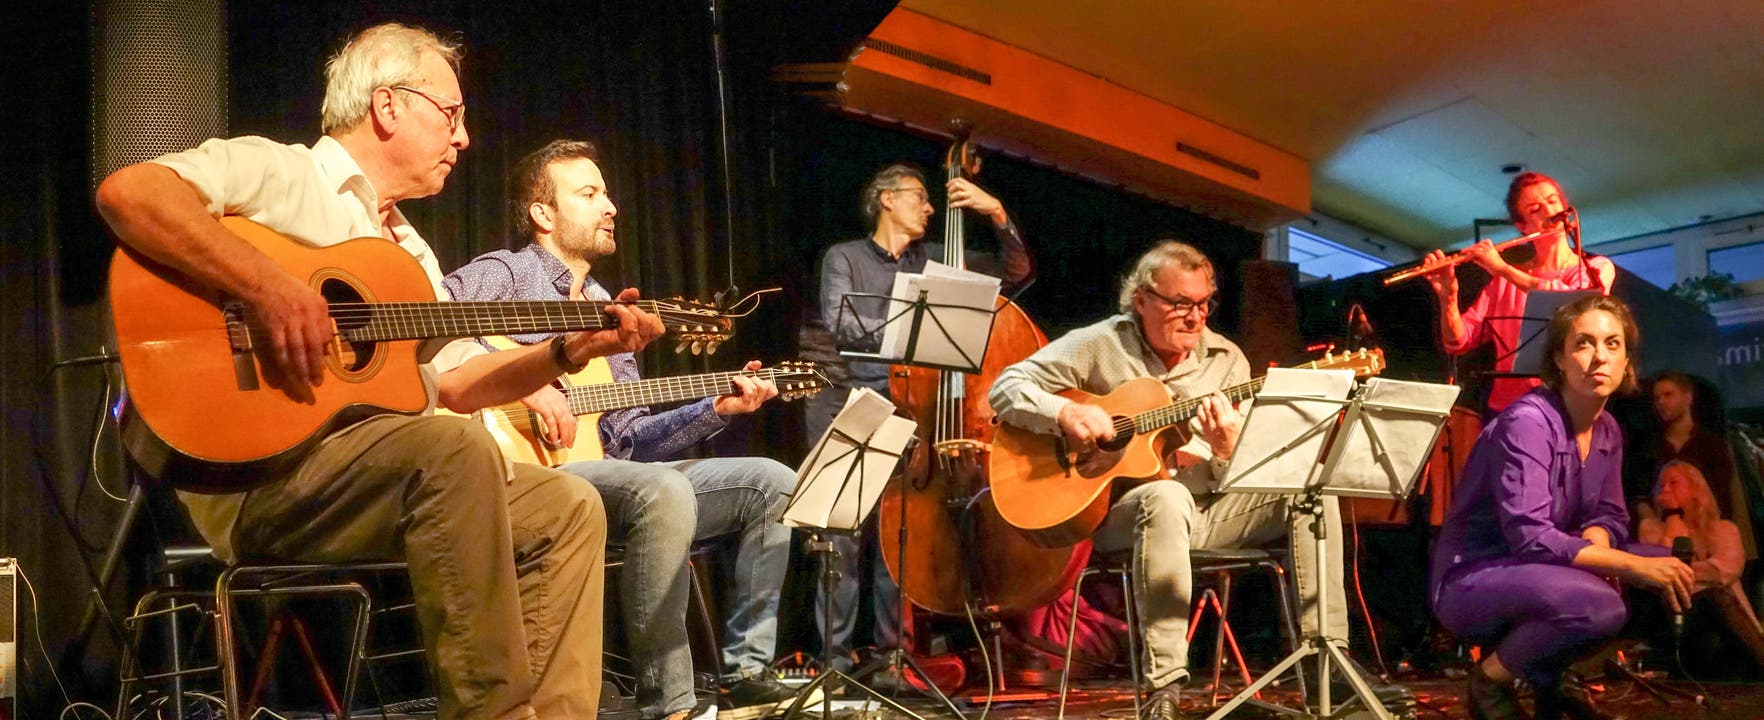 Die Tonic Strings mit Familie und Gastmusikern am ersten von vier Konzerten zu ihrem 30-Jahr-Jubiläum im Prima Vista Baden.